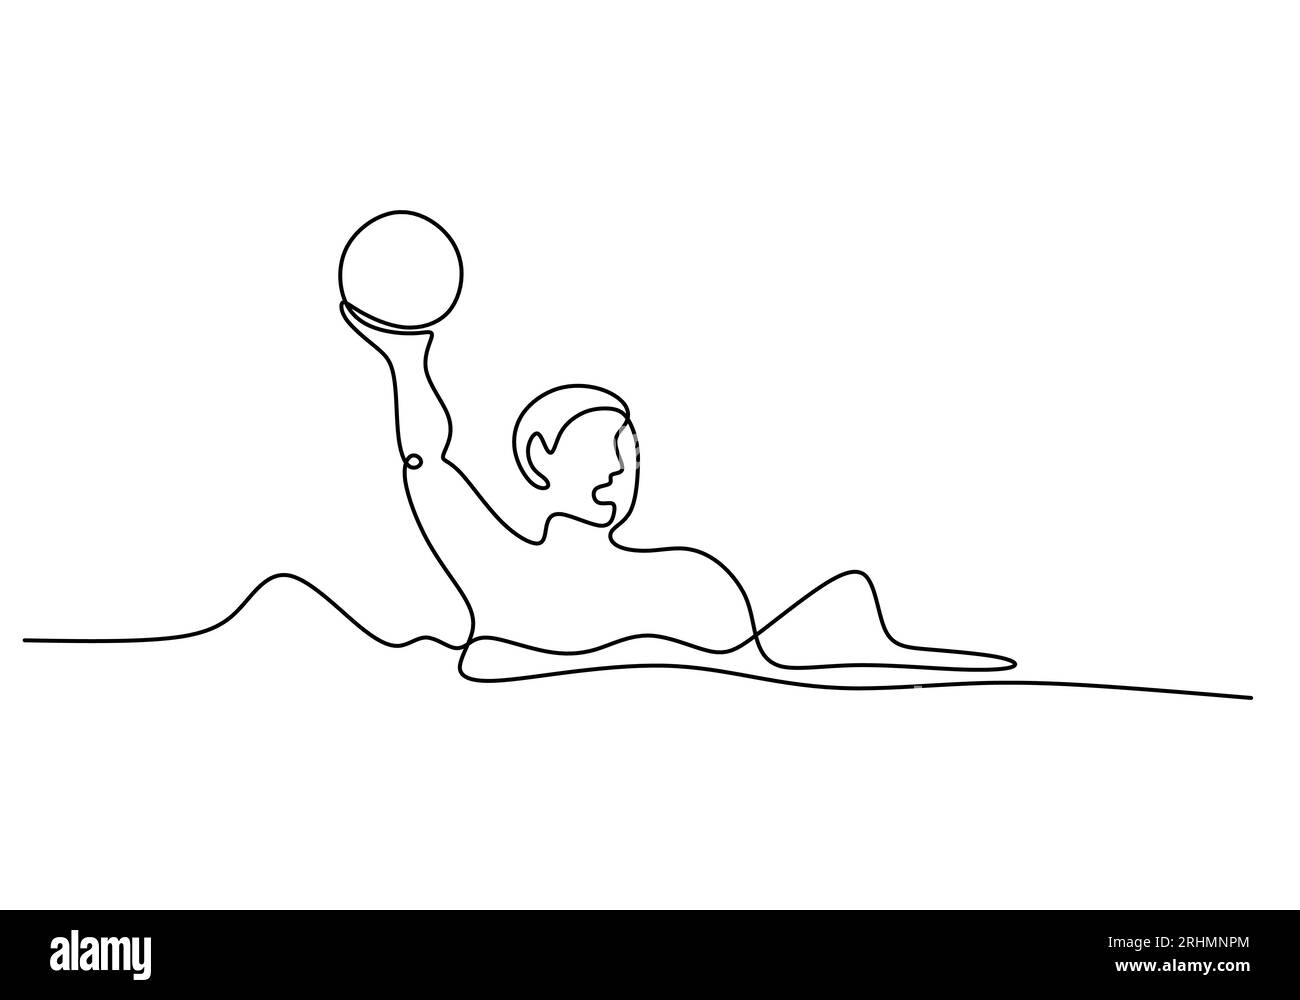 Wasserballball Eine Linie Zeichnen: Durchgehendes Handgezeichnetes Sport-Thema Stock Vektor